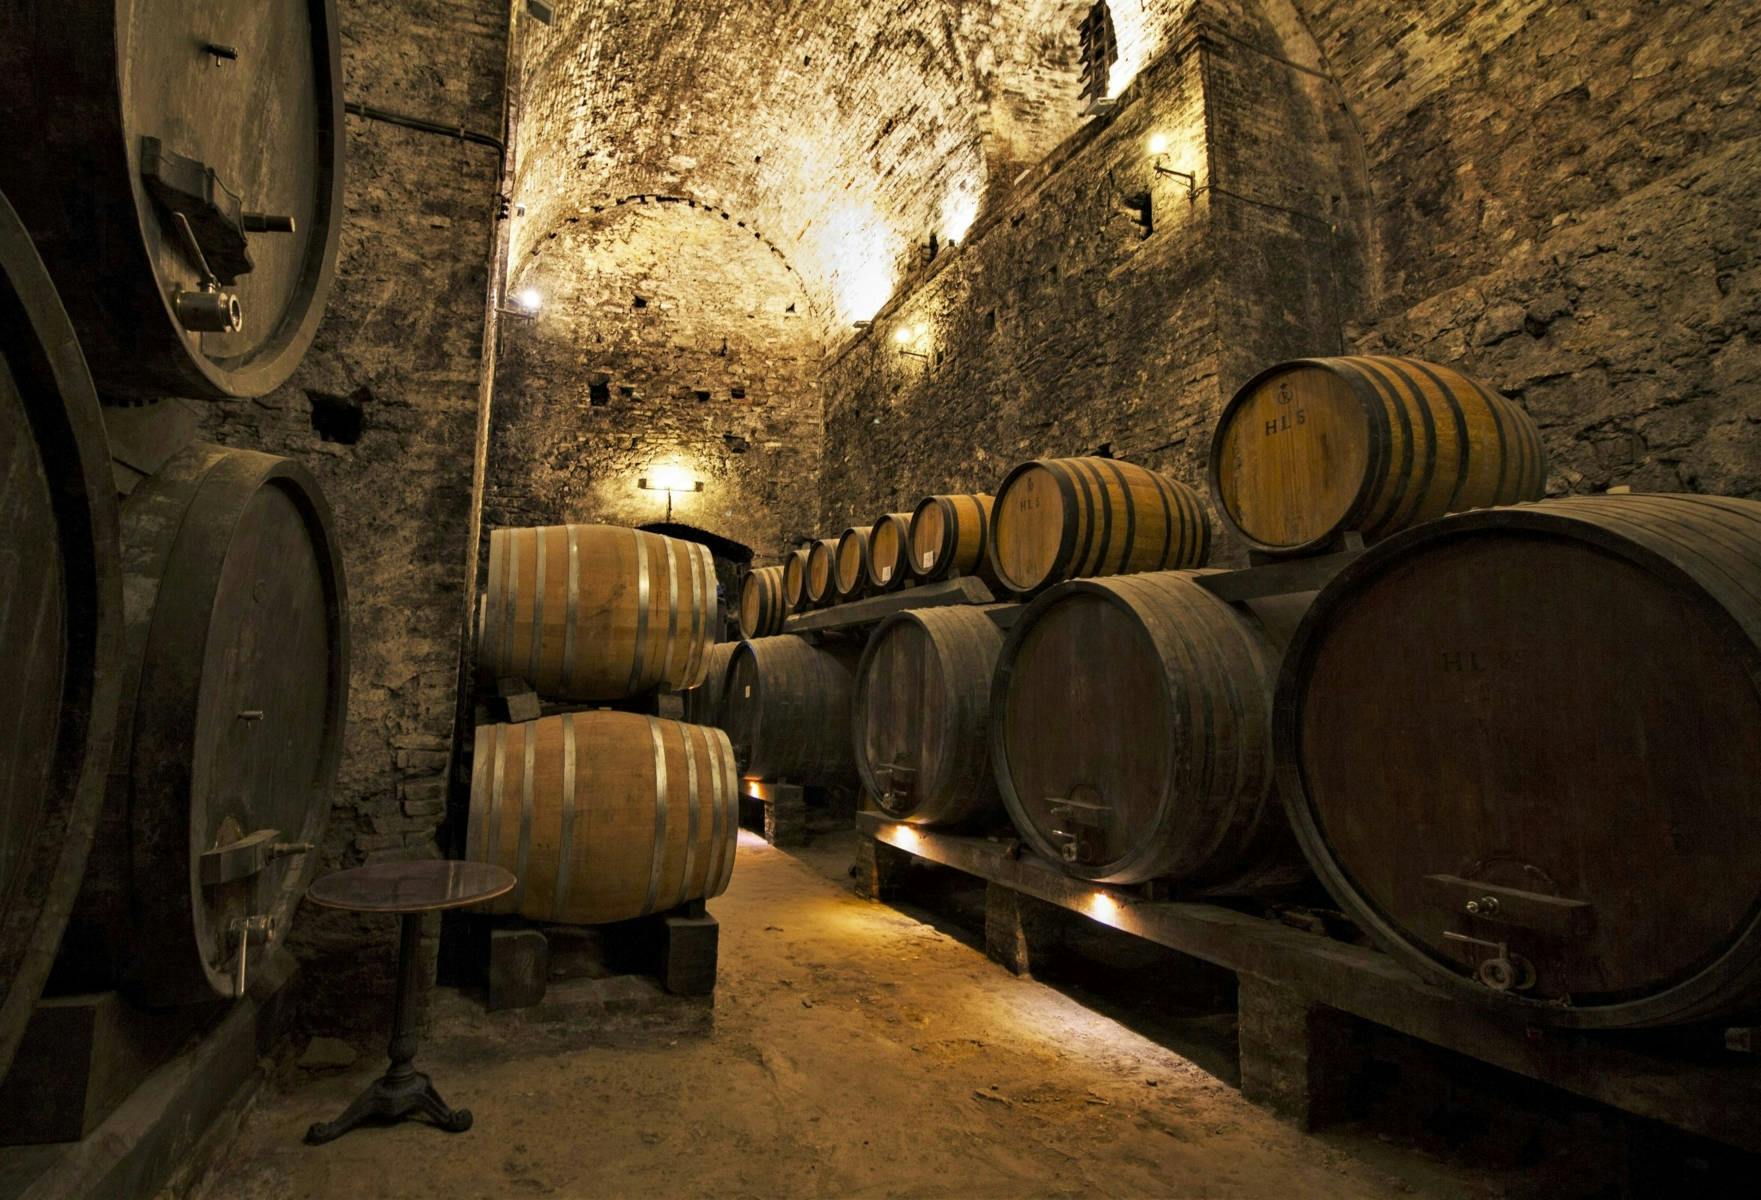 Führung durch Montepulciano und Montalcino mit Weinprobe